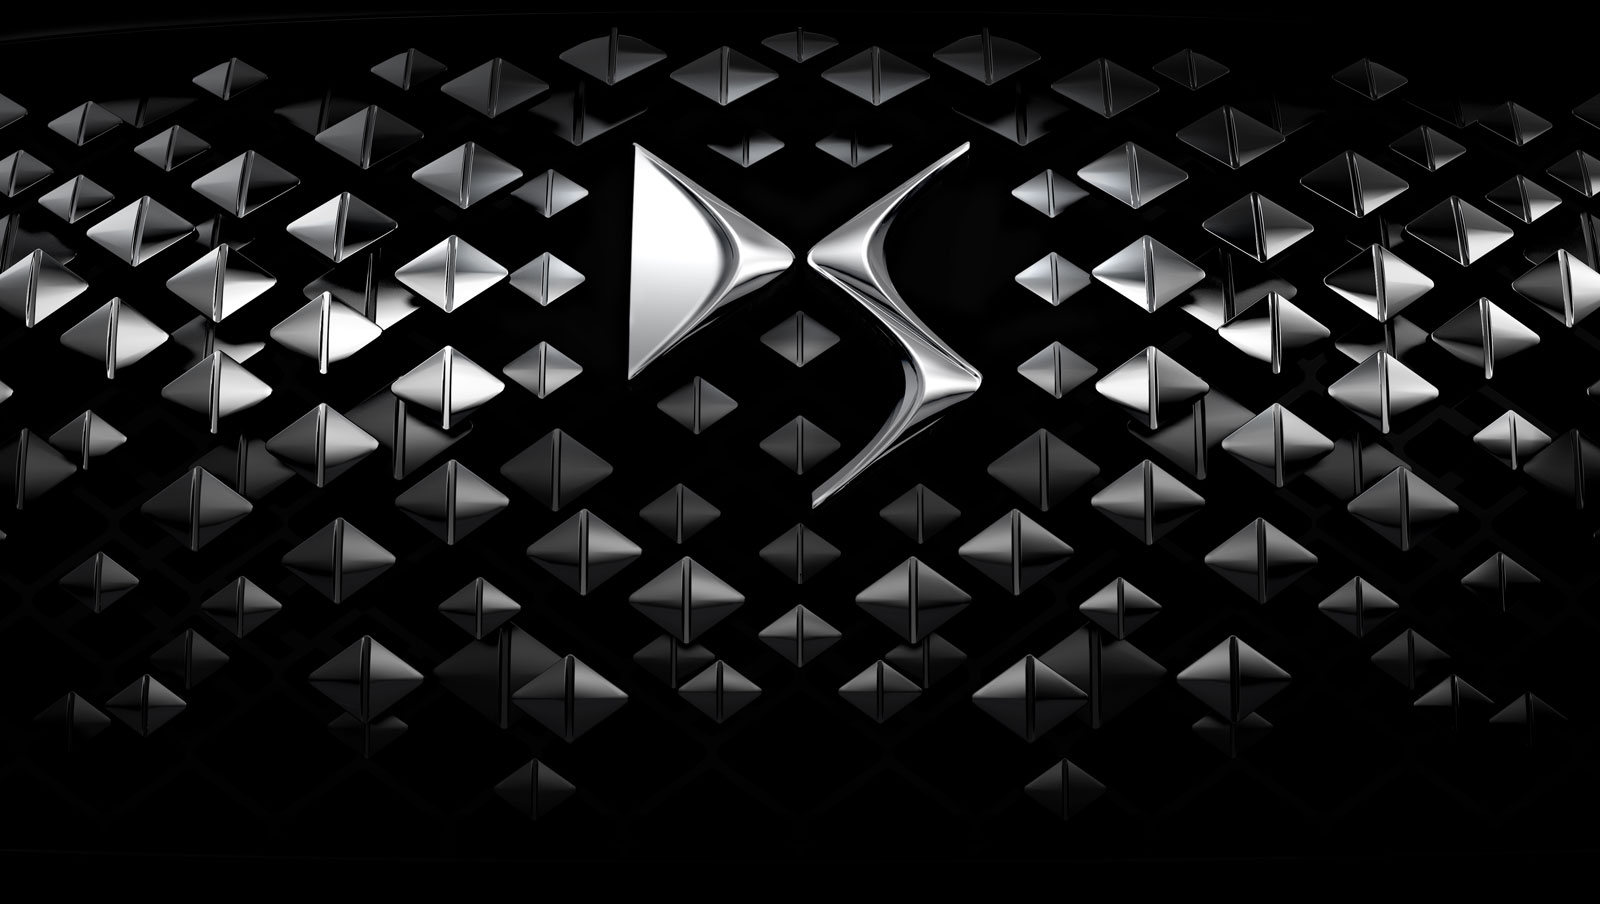 Citroen Divine DS Concept, 2014 - Front Grille